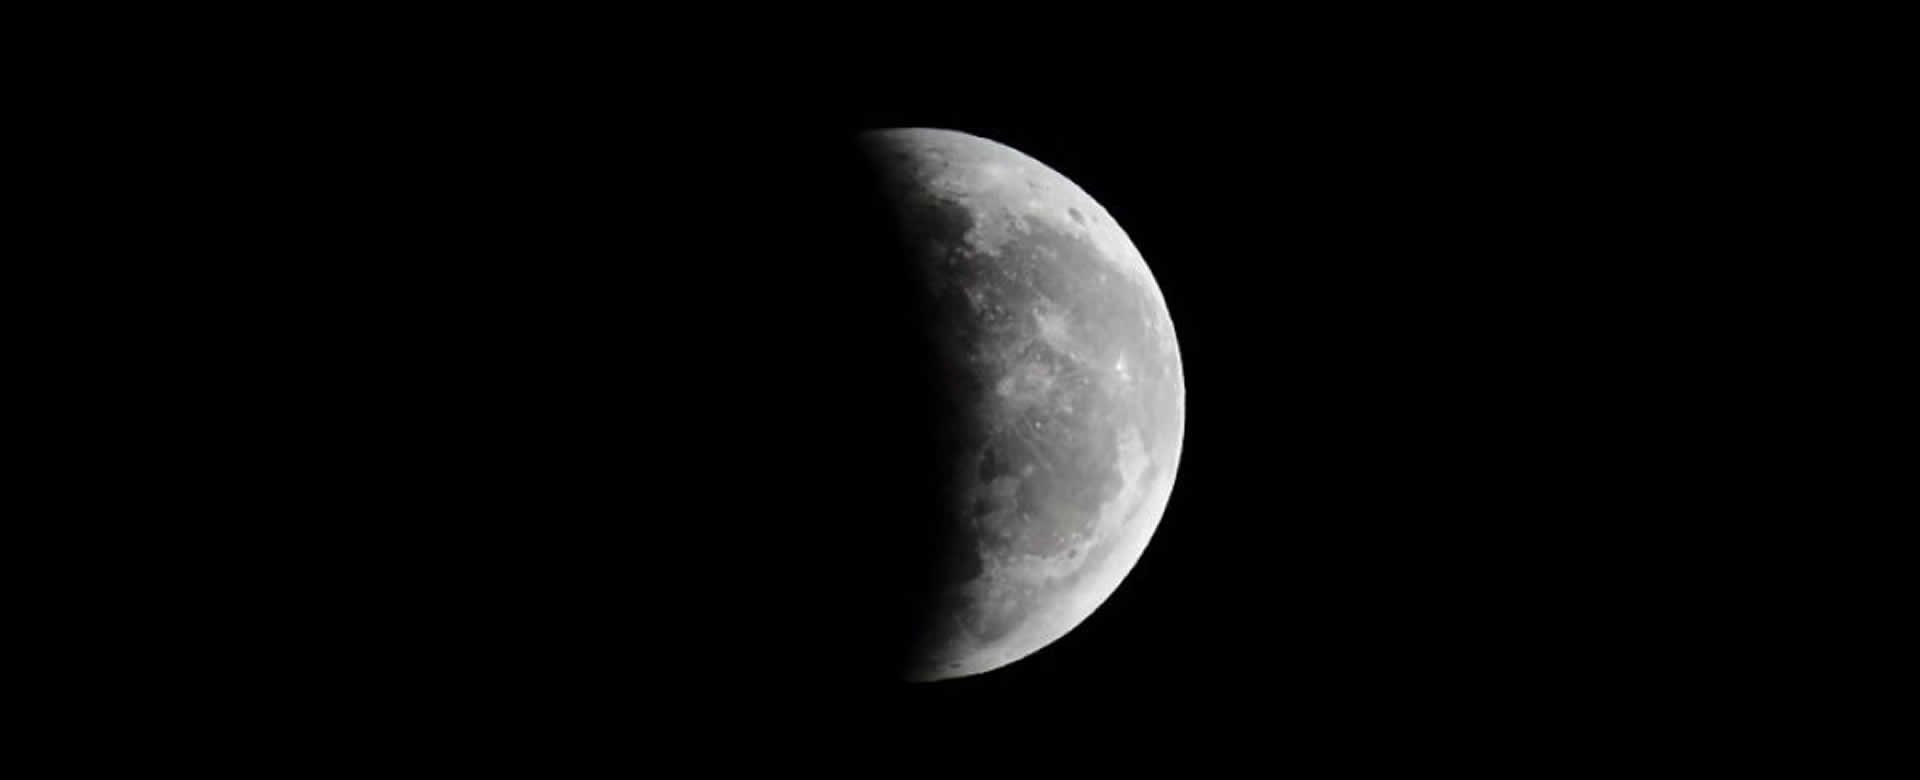 No podremos apreciar el último eclipse lunar parcial de este año